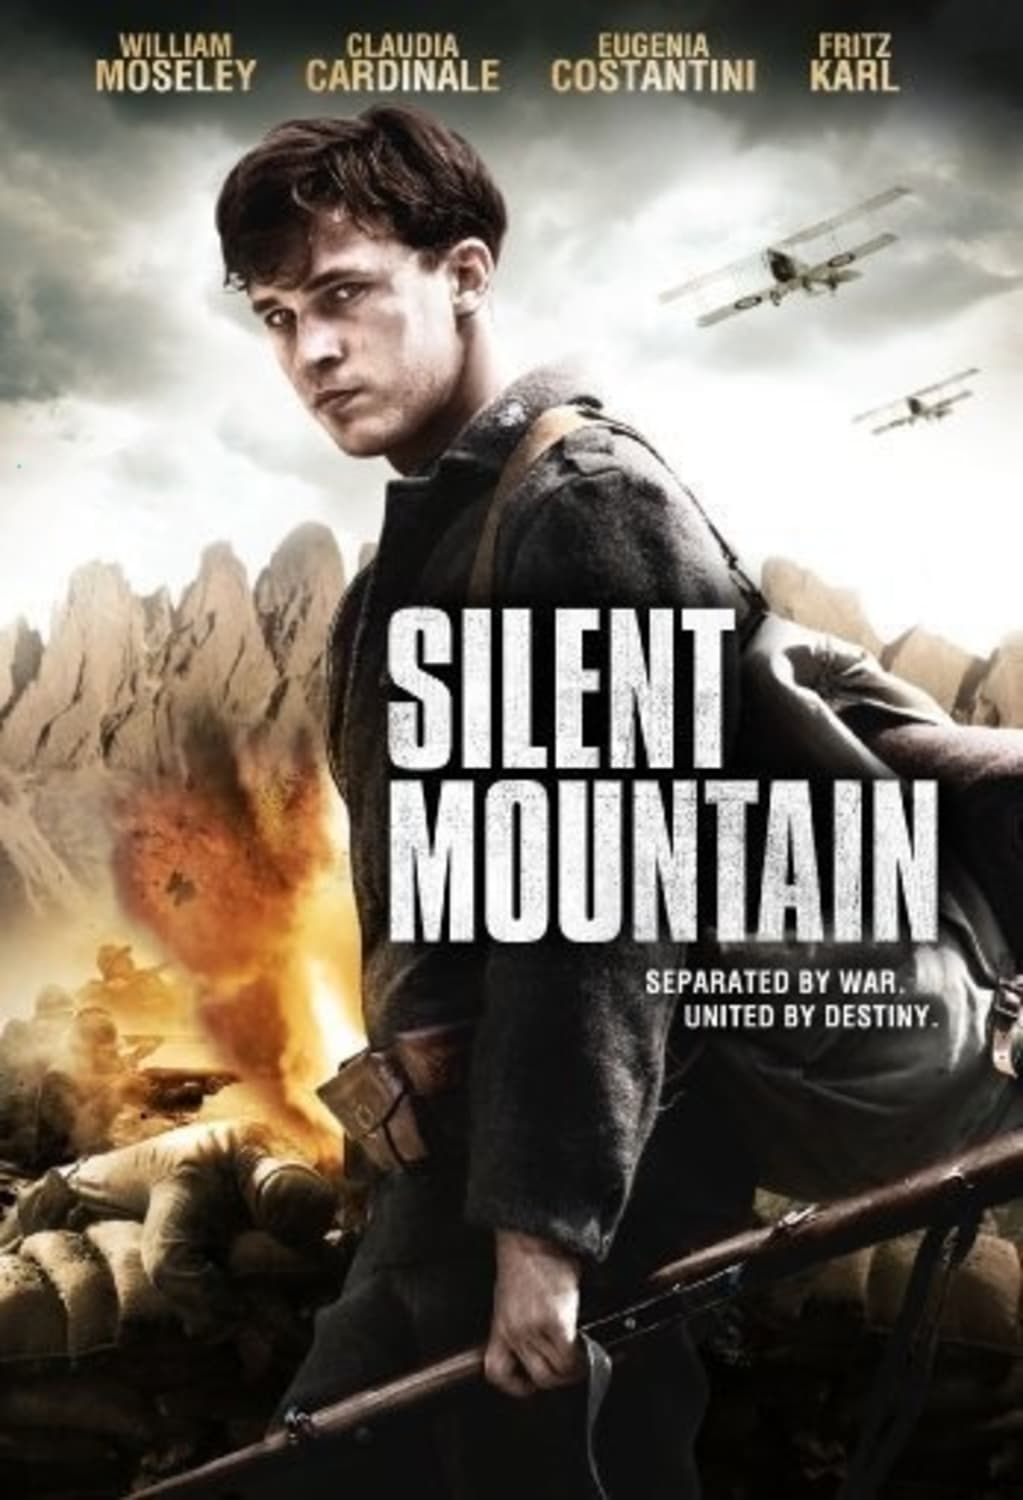 Silent Mountain (DVD) on MovieShack